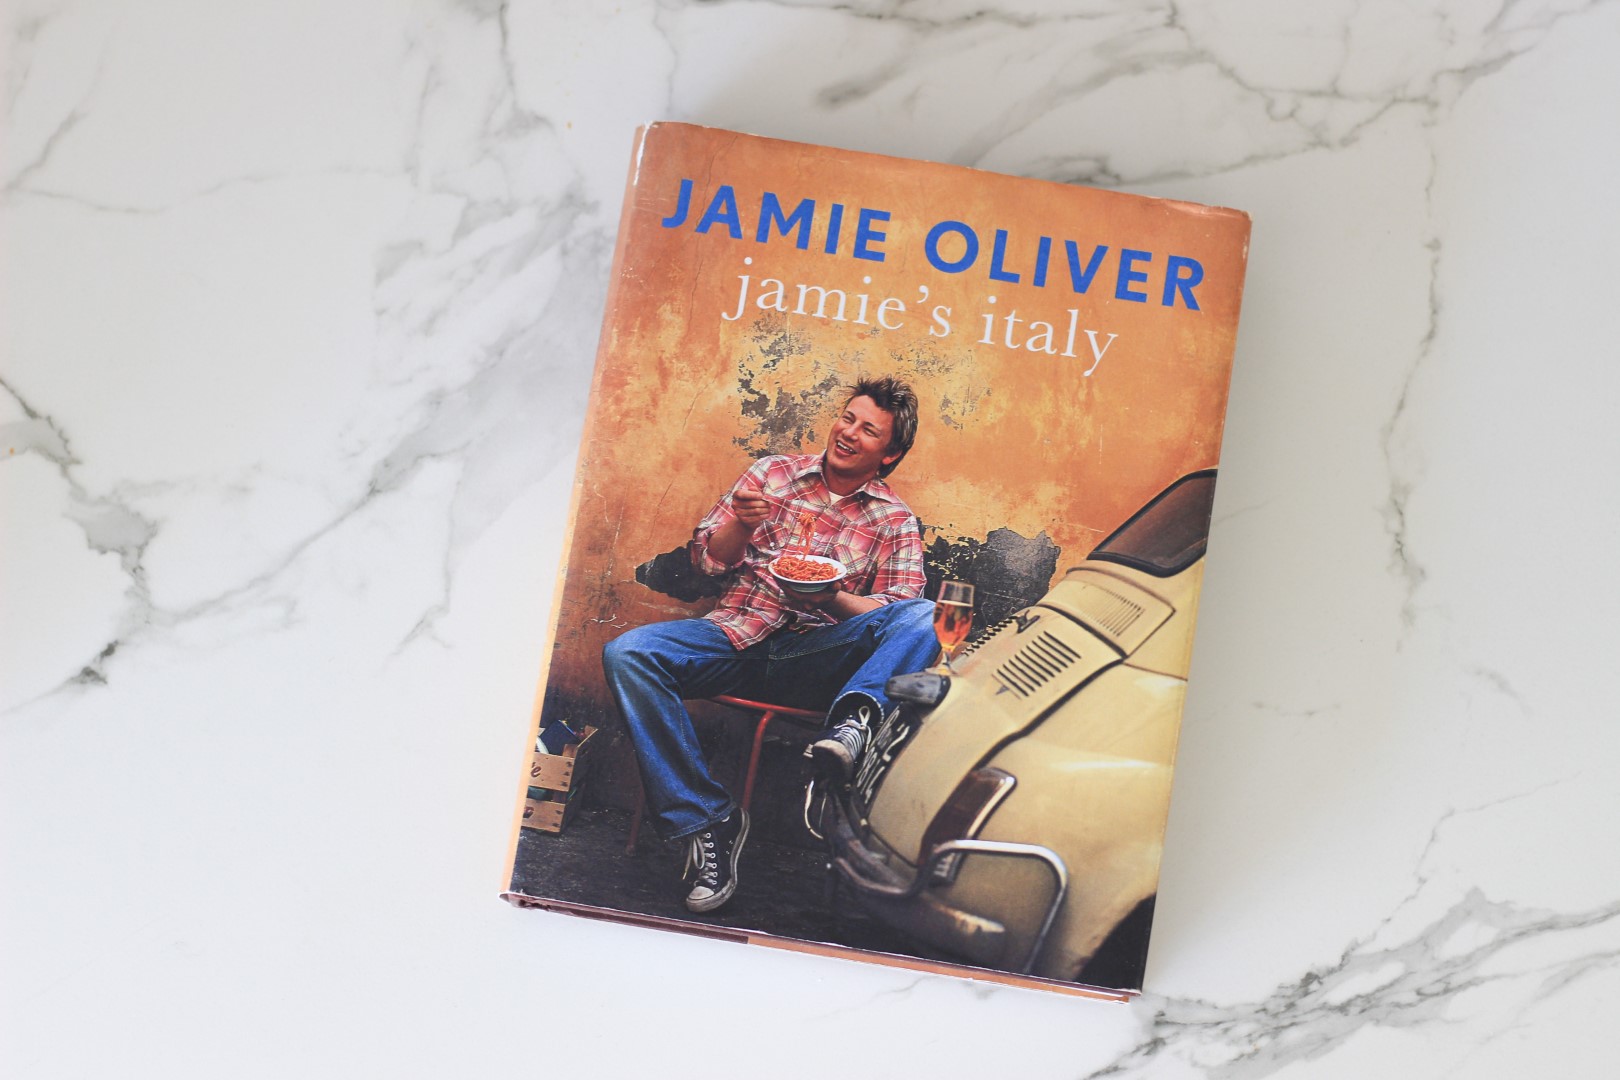 jamie oliver, libros de jamie oliver, jamie's italy, libros de cocina, recetas de cocina, recomendación libros de cocina.